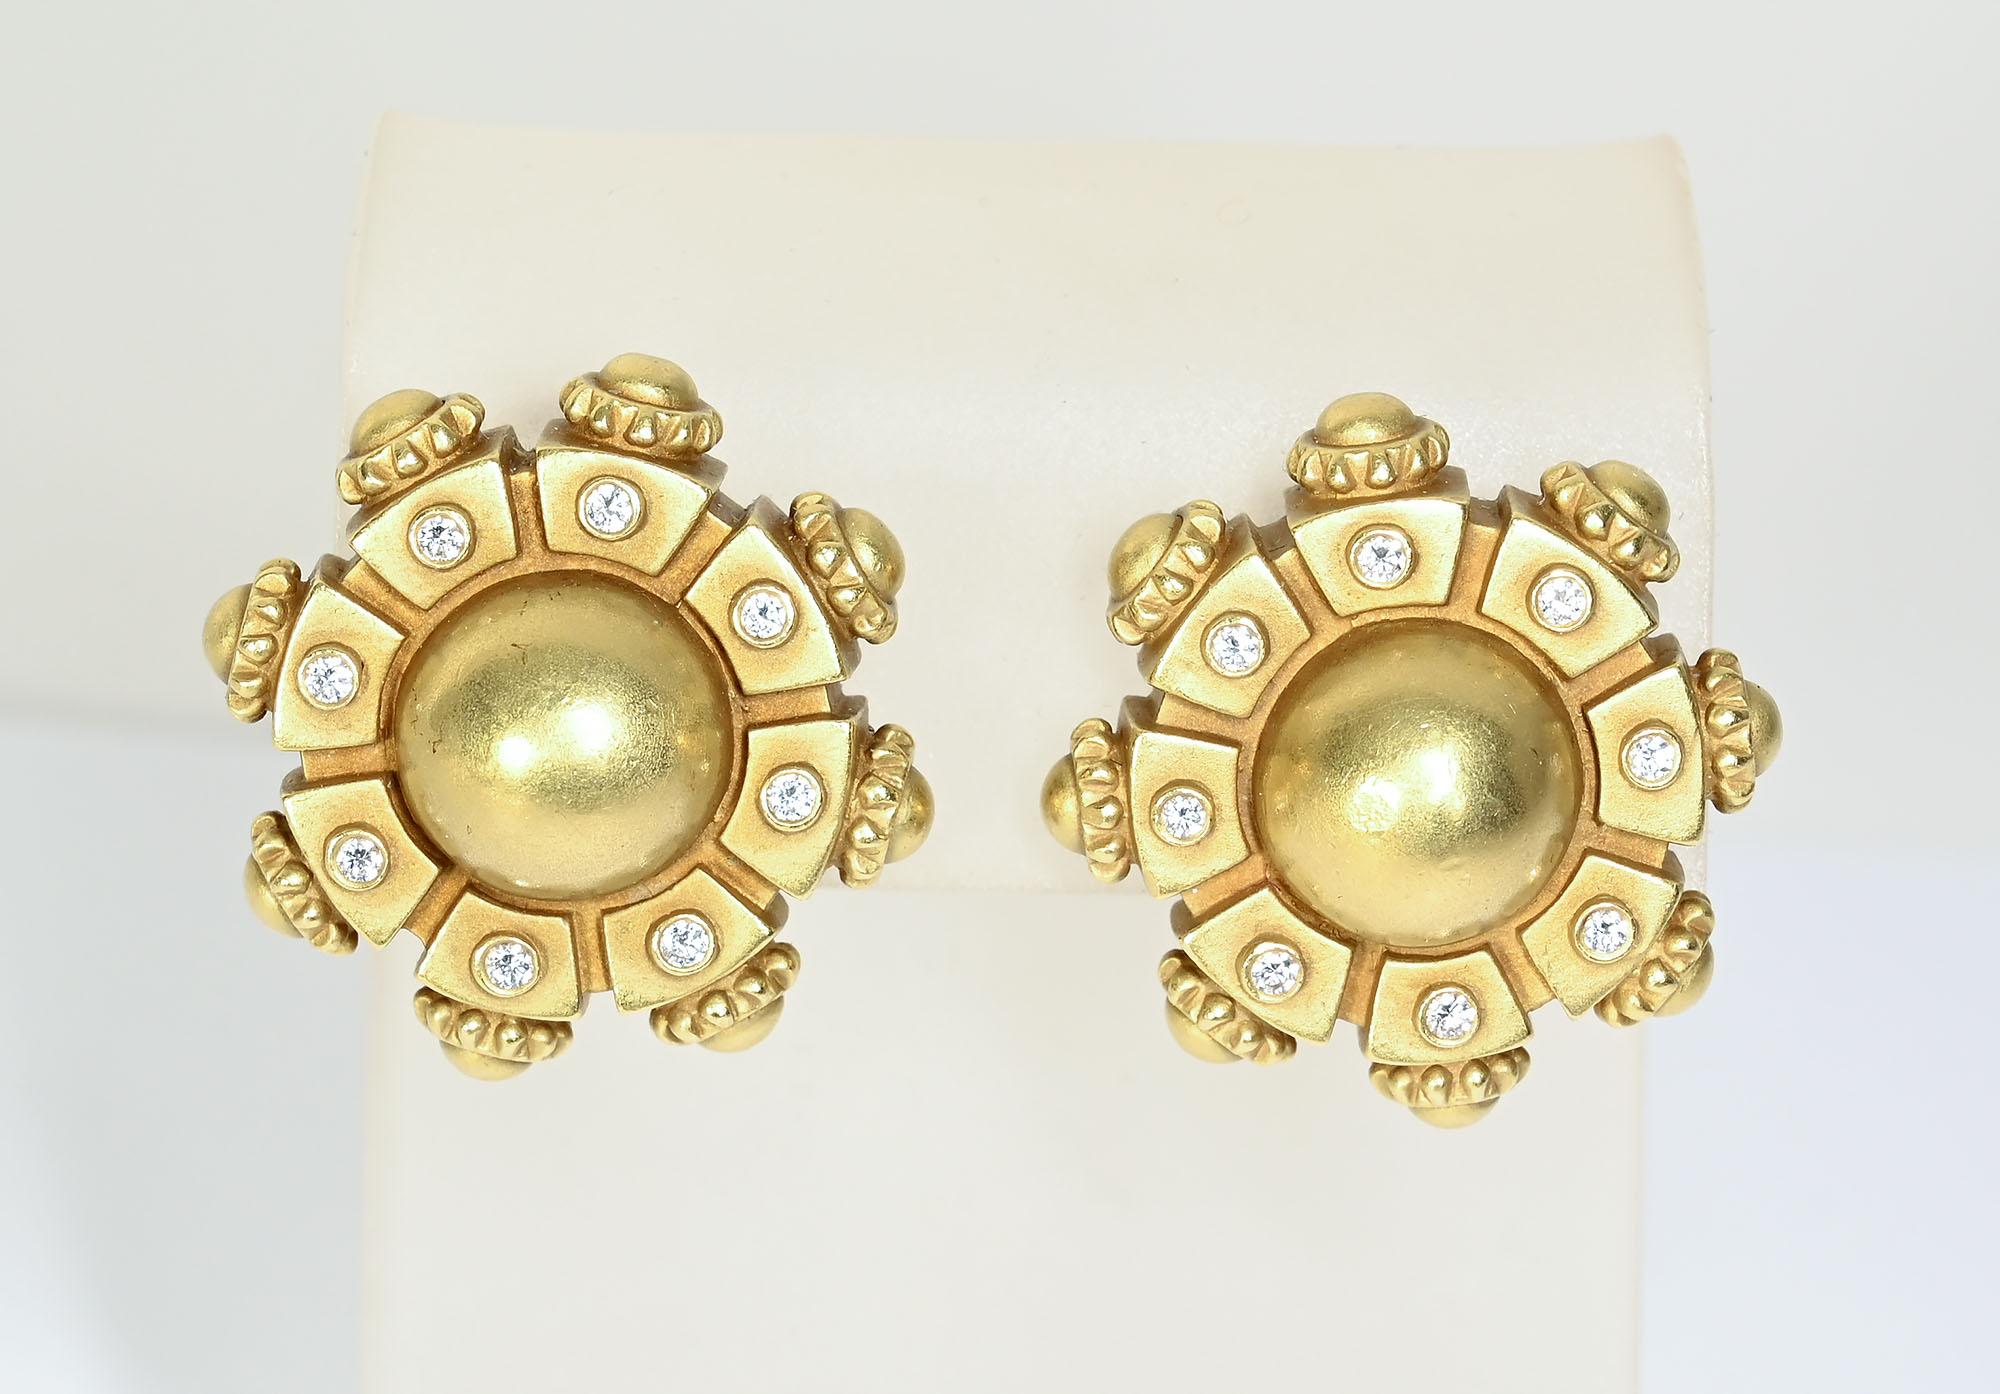 Seltenes Paar Ohrringe aus Gold und Diamanten von Barry Kieselstein Corde. Die Ohrringe haben eine gewölbte runde Mitte, die von 8 rechteckigen Plättchen umgeben ist, in deren Mitte sich jeweils ein Diamant befindet. Die Außenseite der Tafeln